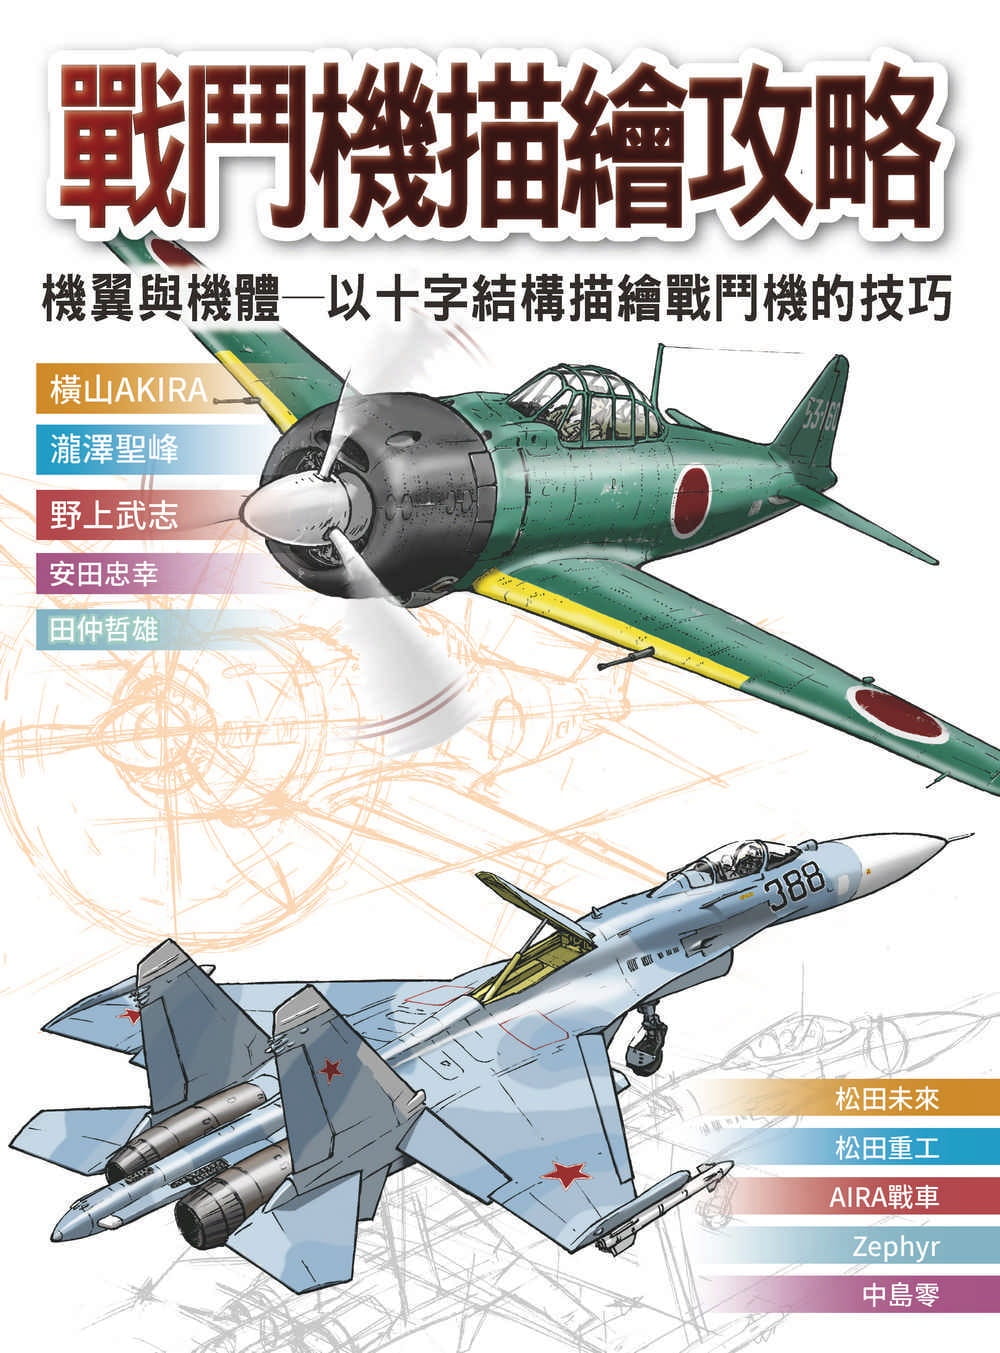 现货 原版进口书 横山AKIRA战斗机描绘攻略 : 机翼与机体 以十字结构描绘战斗机的技巧北星 艺术设计